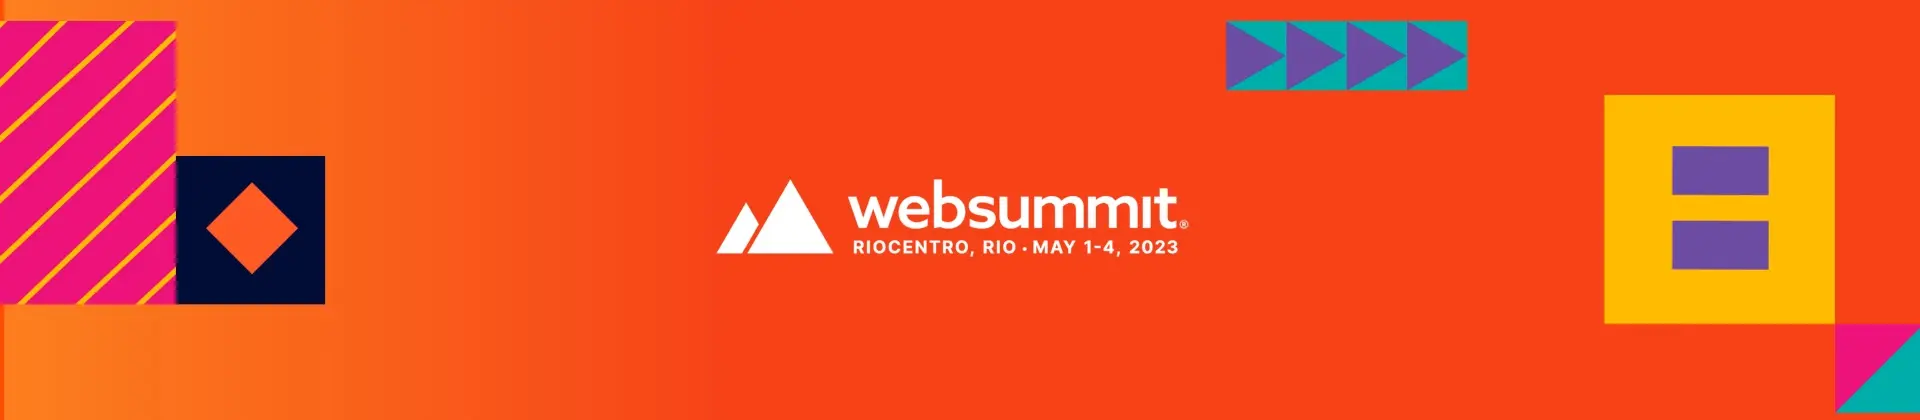 beOn Claro no Web Summit Rio 2023